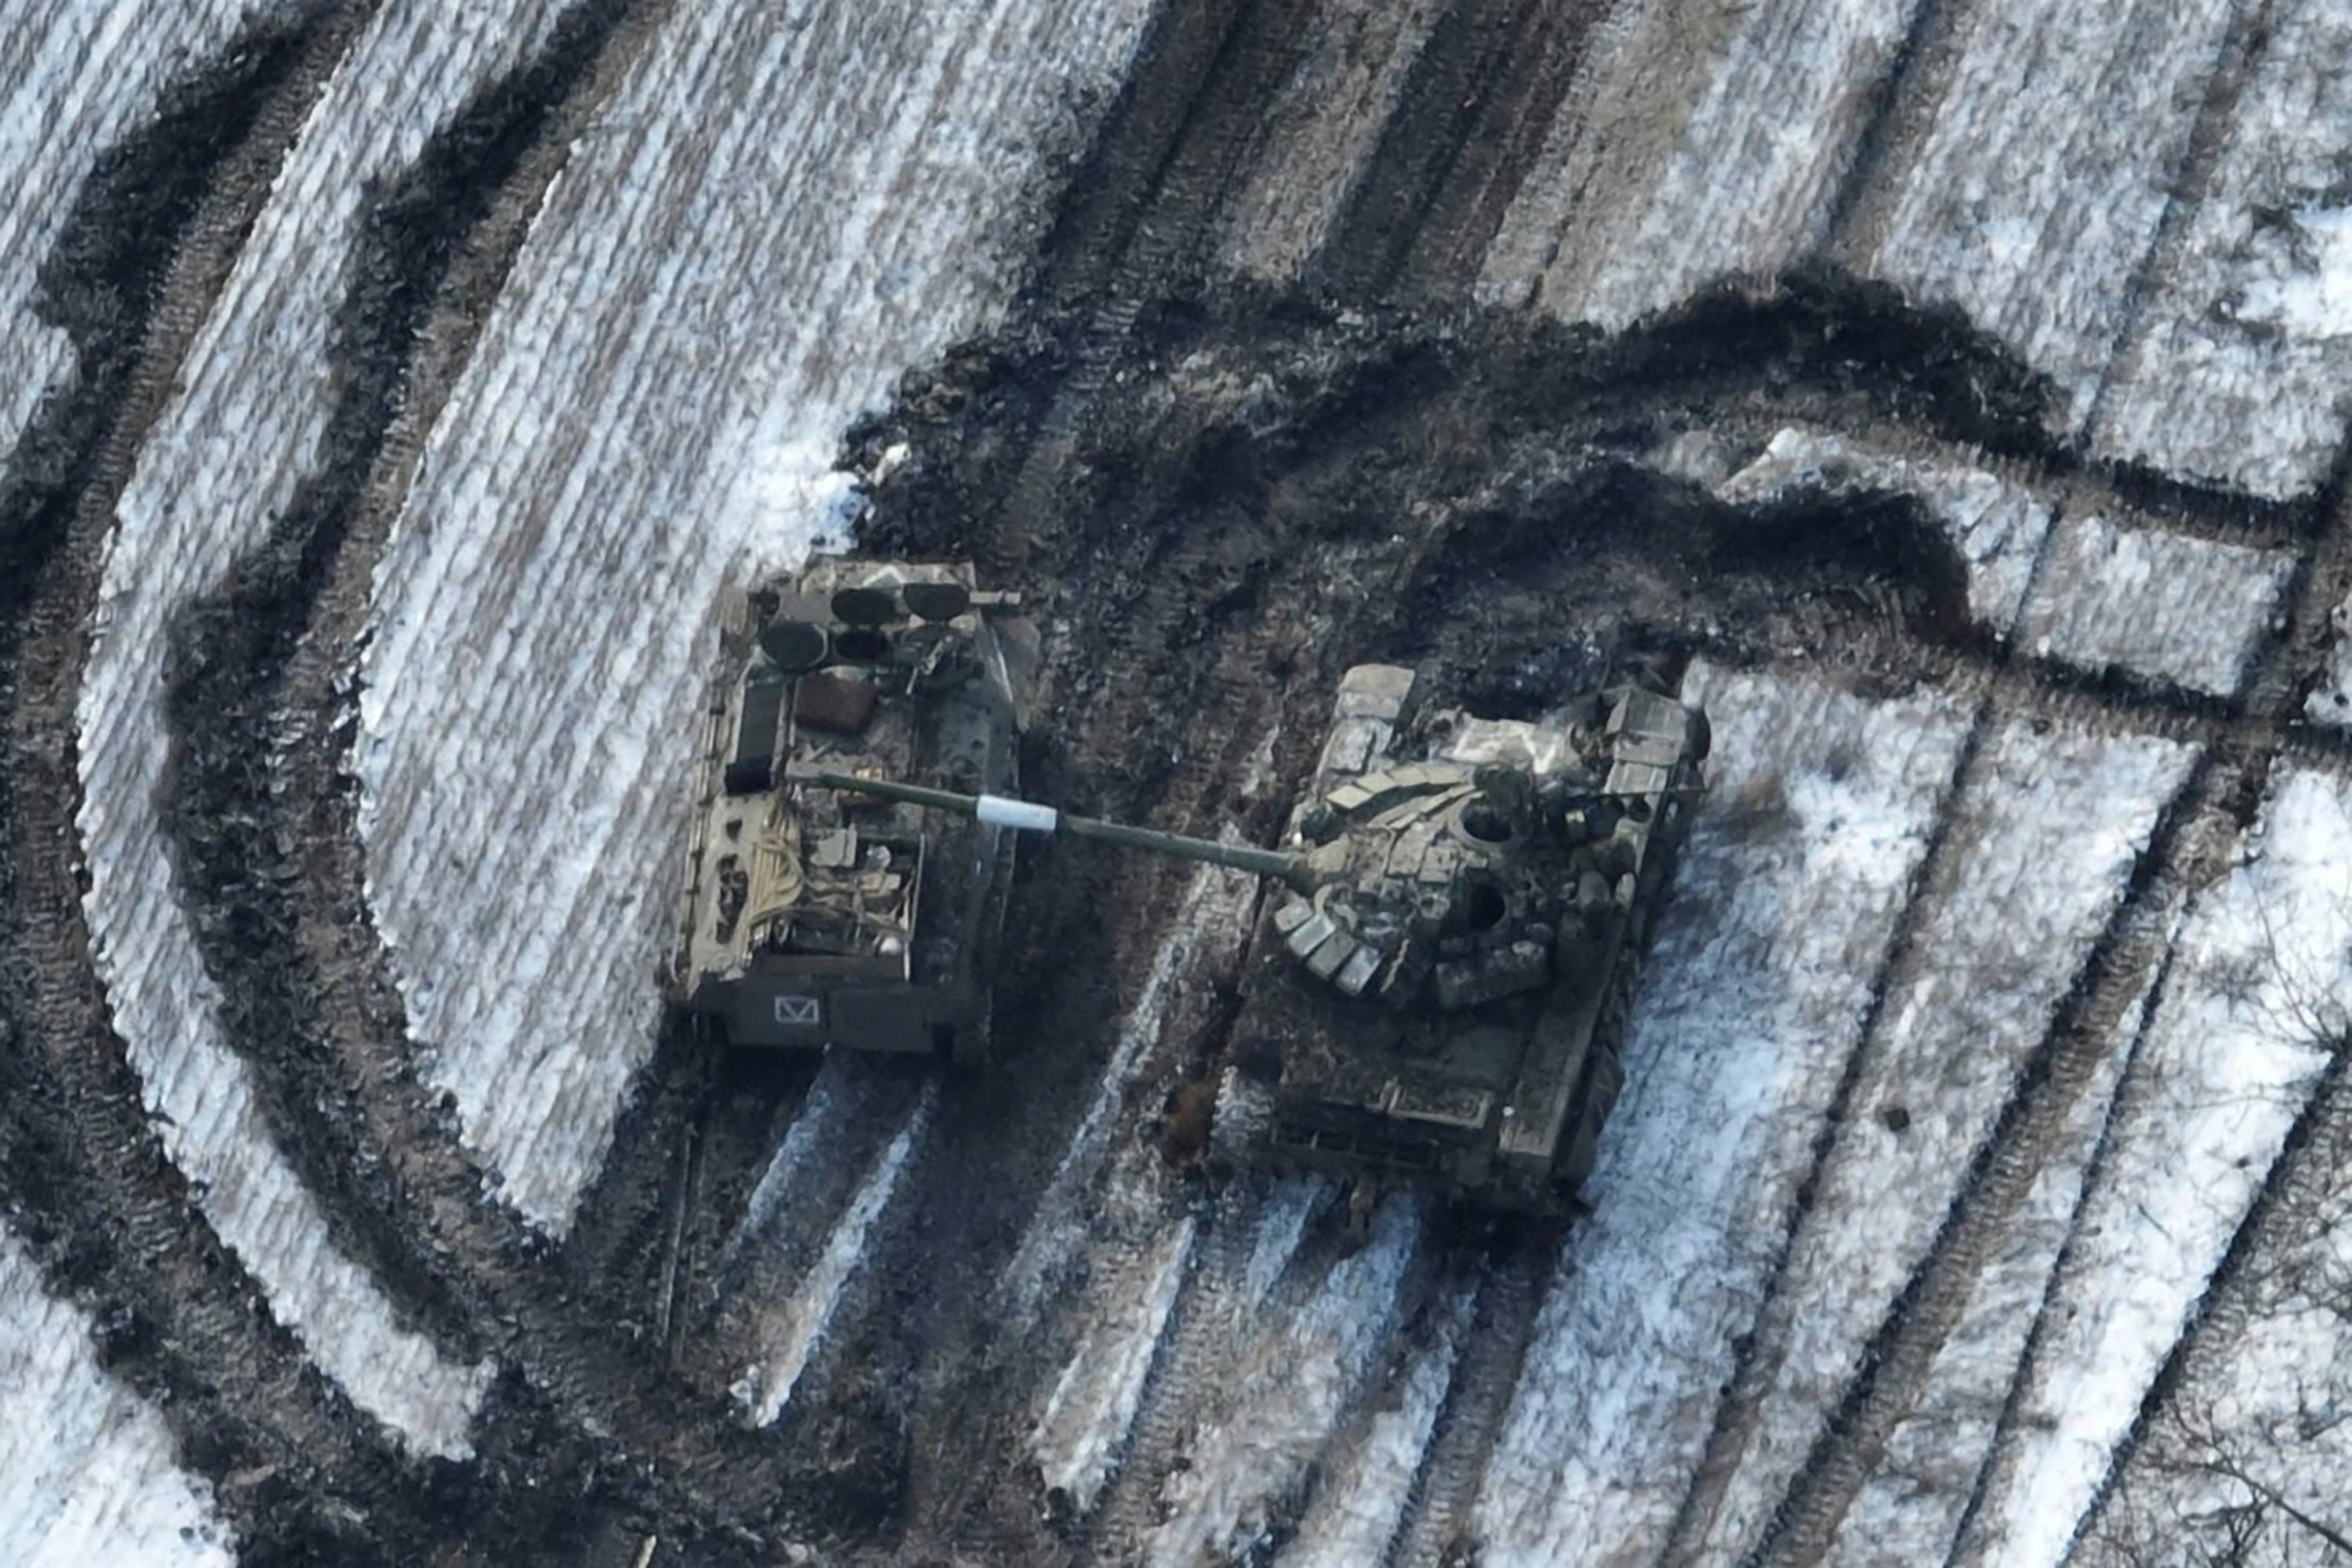 Damaged Russian tanks in eastern Ukraine